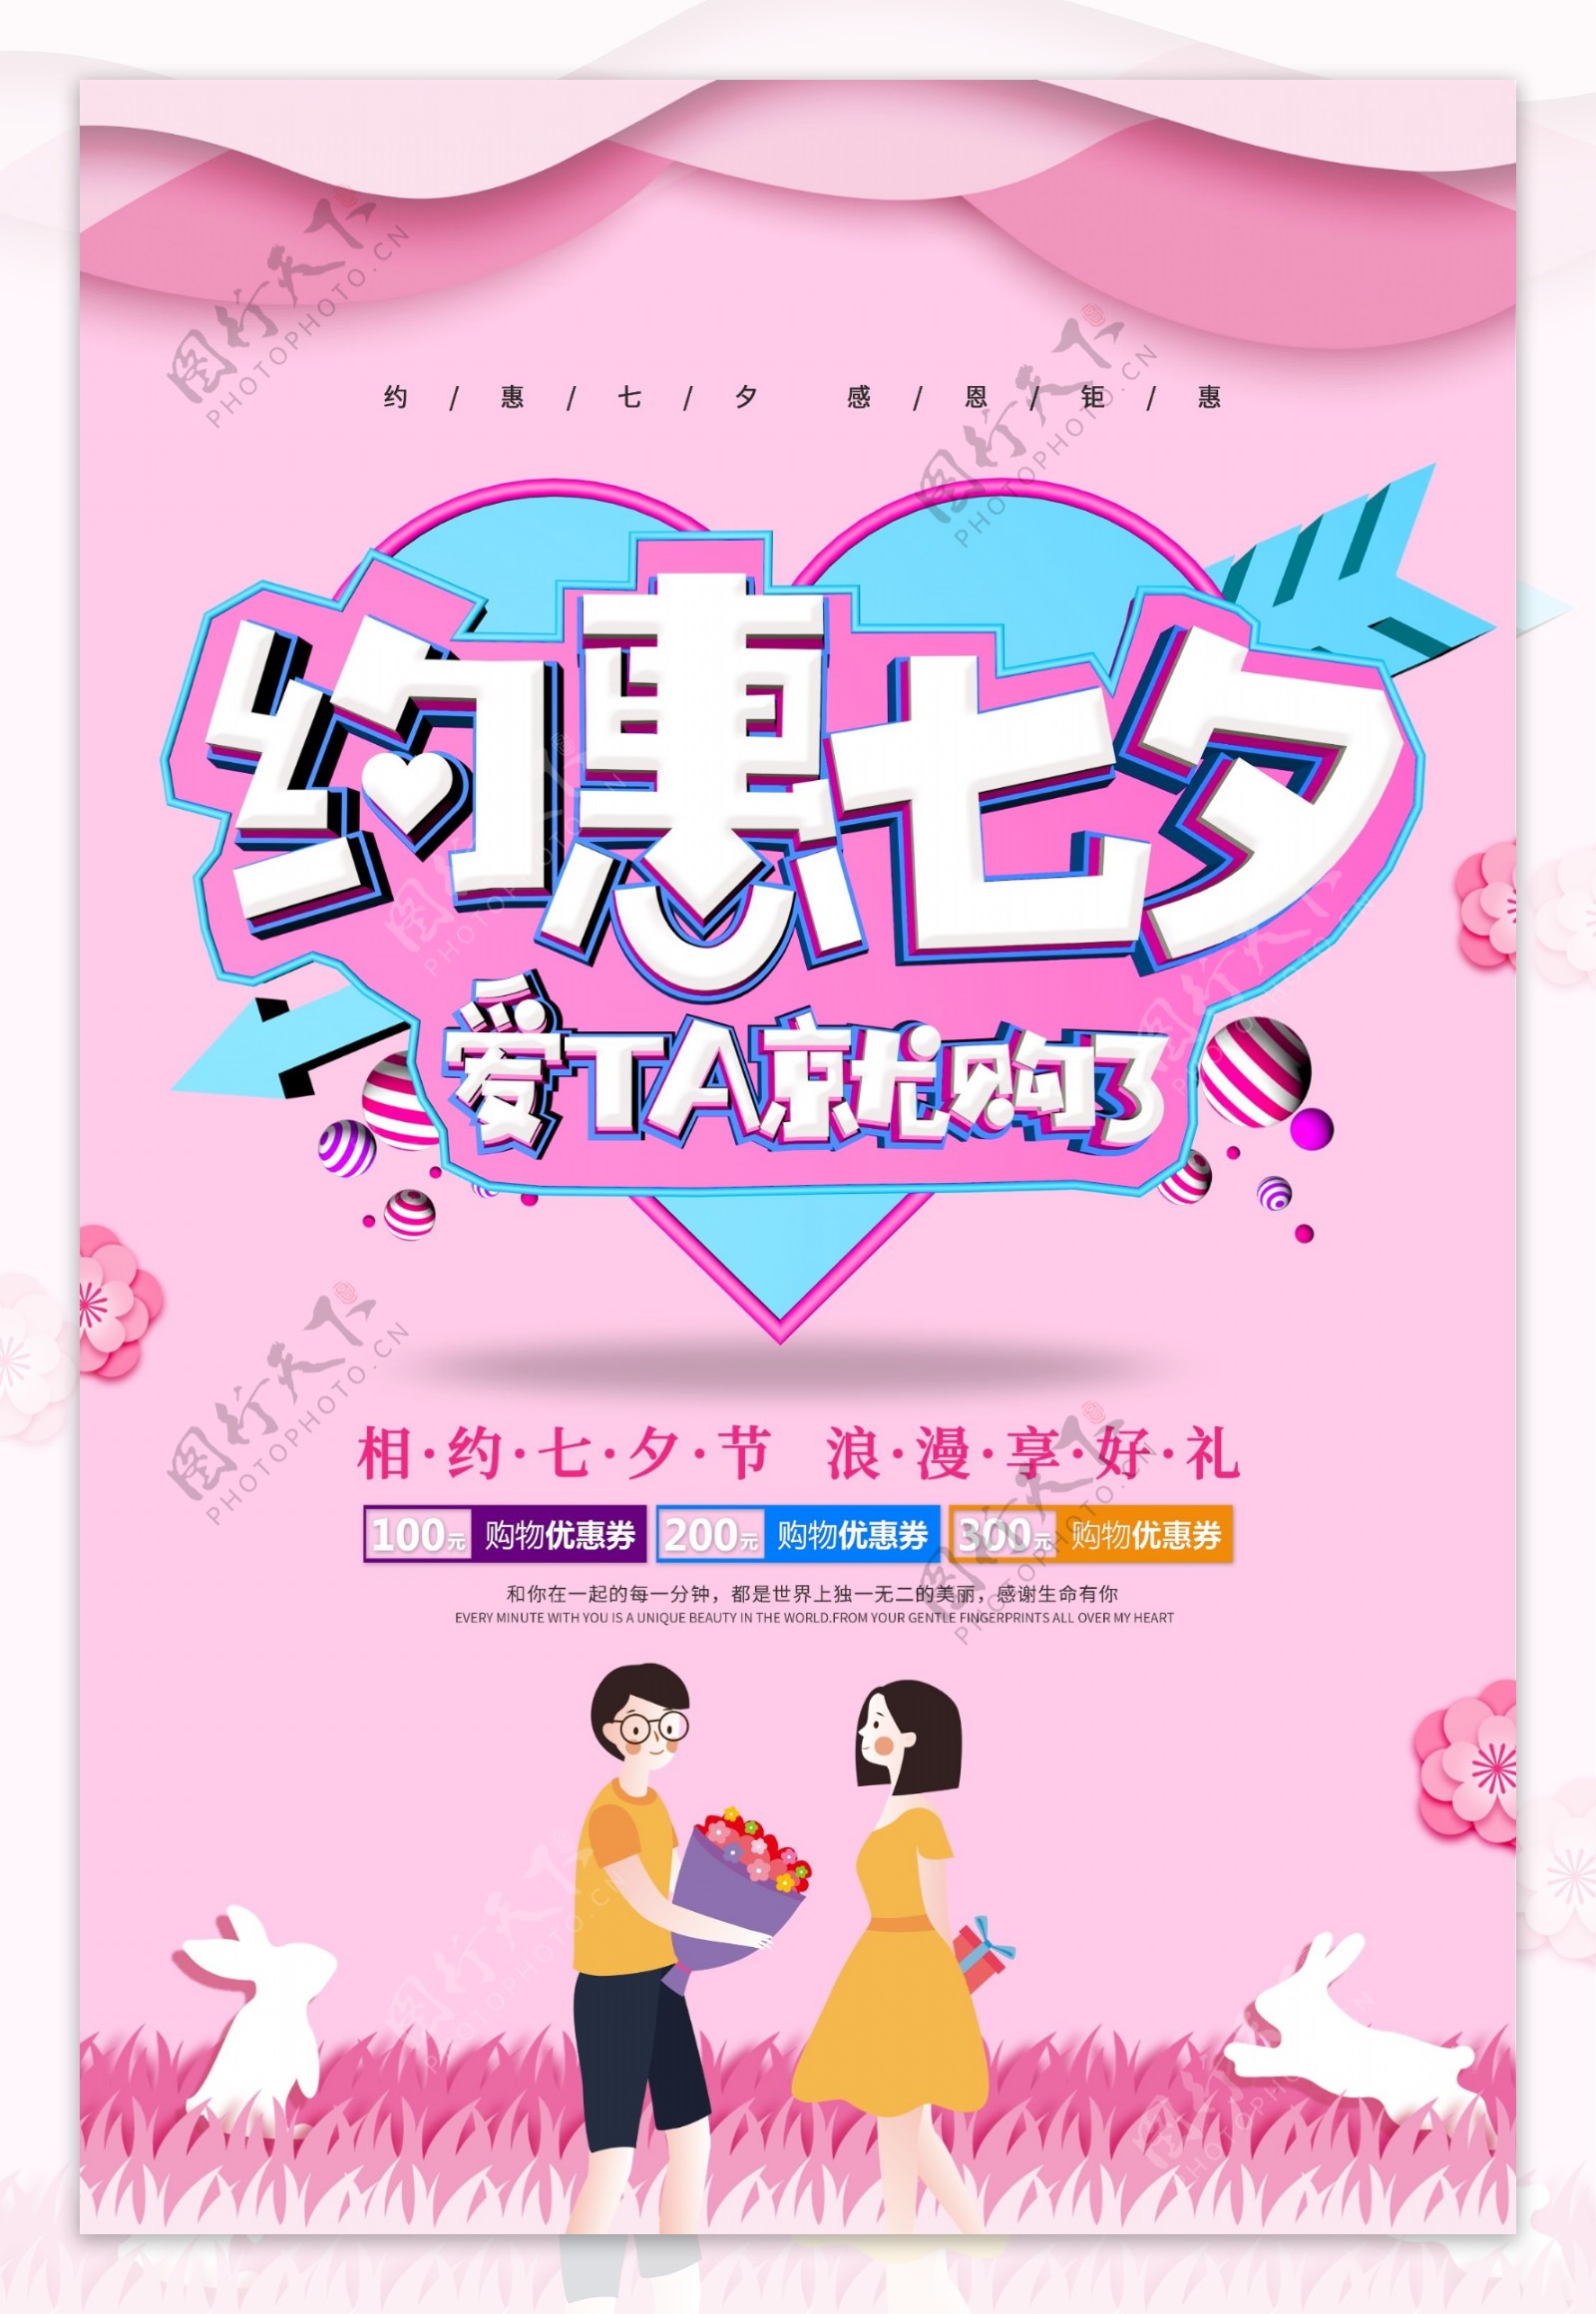 商场七夕情人节活动促销海报